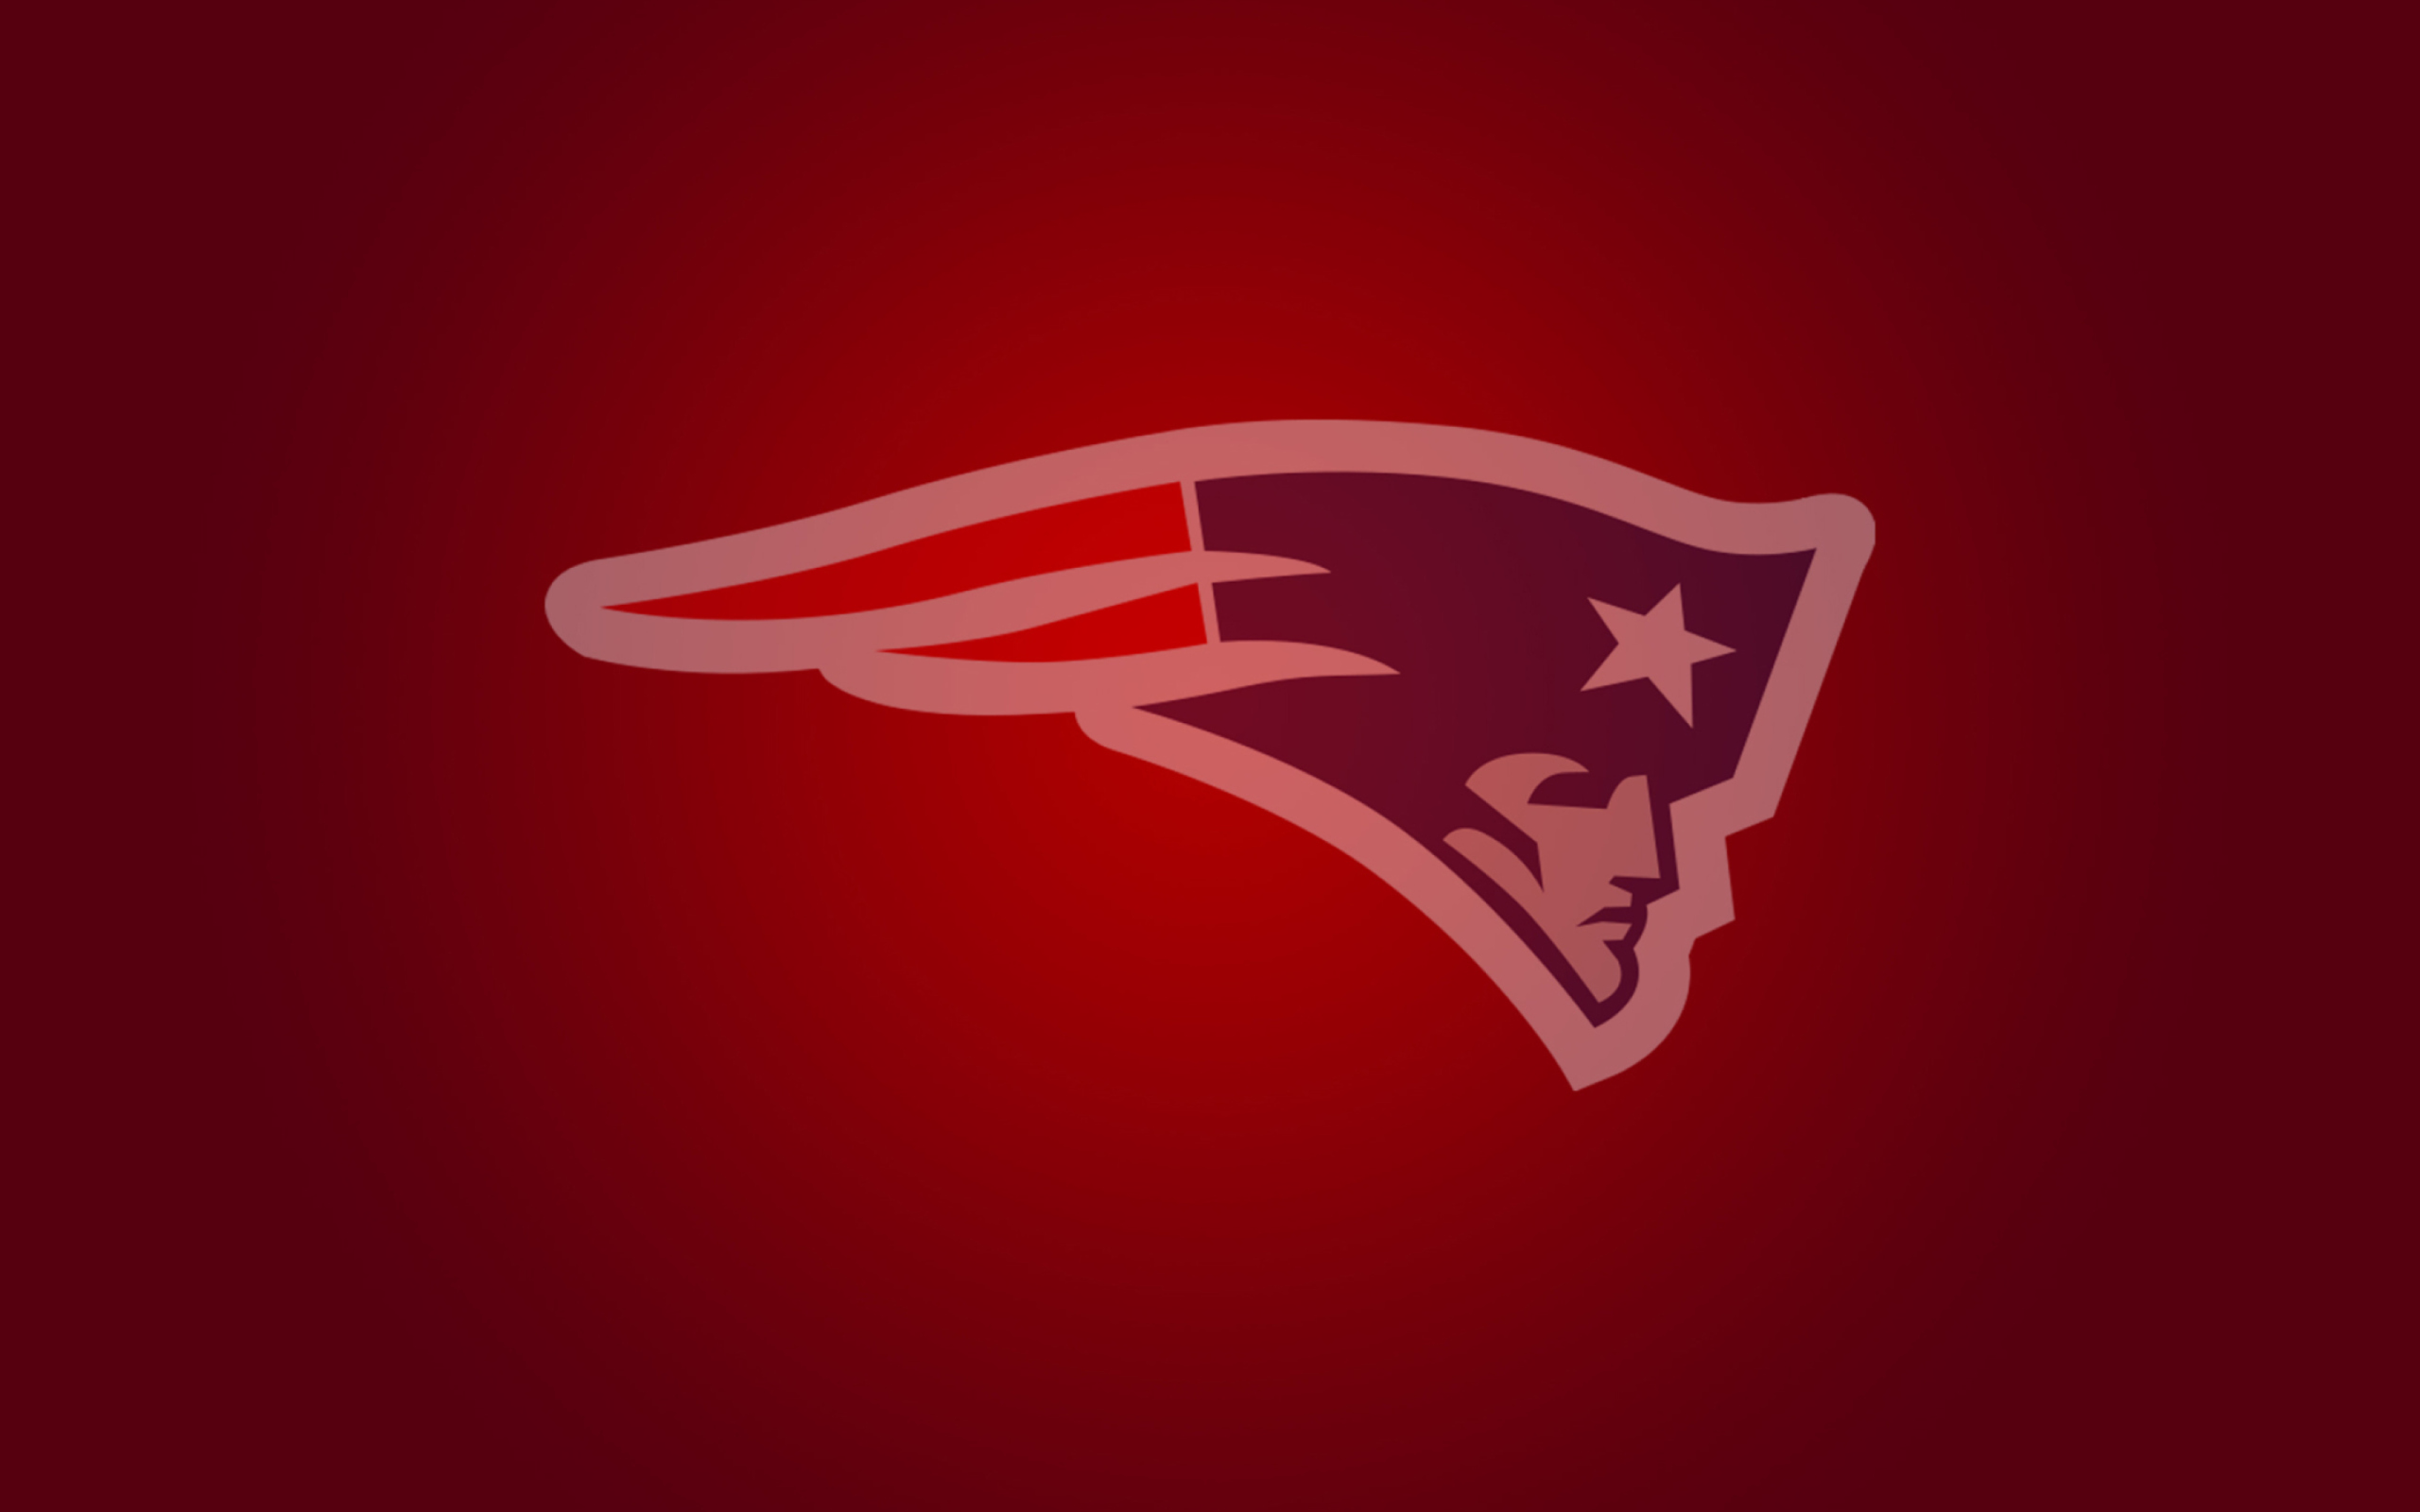 New England Patriots wallpaper 2560x1600